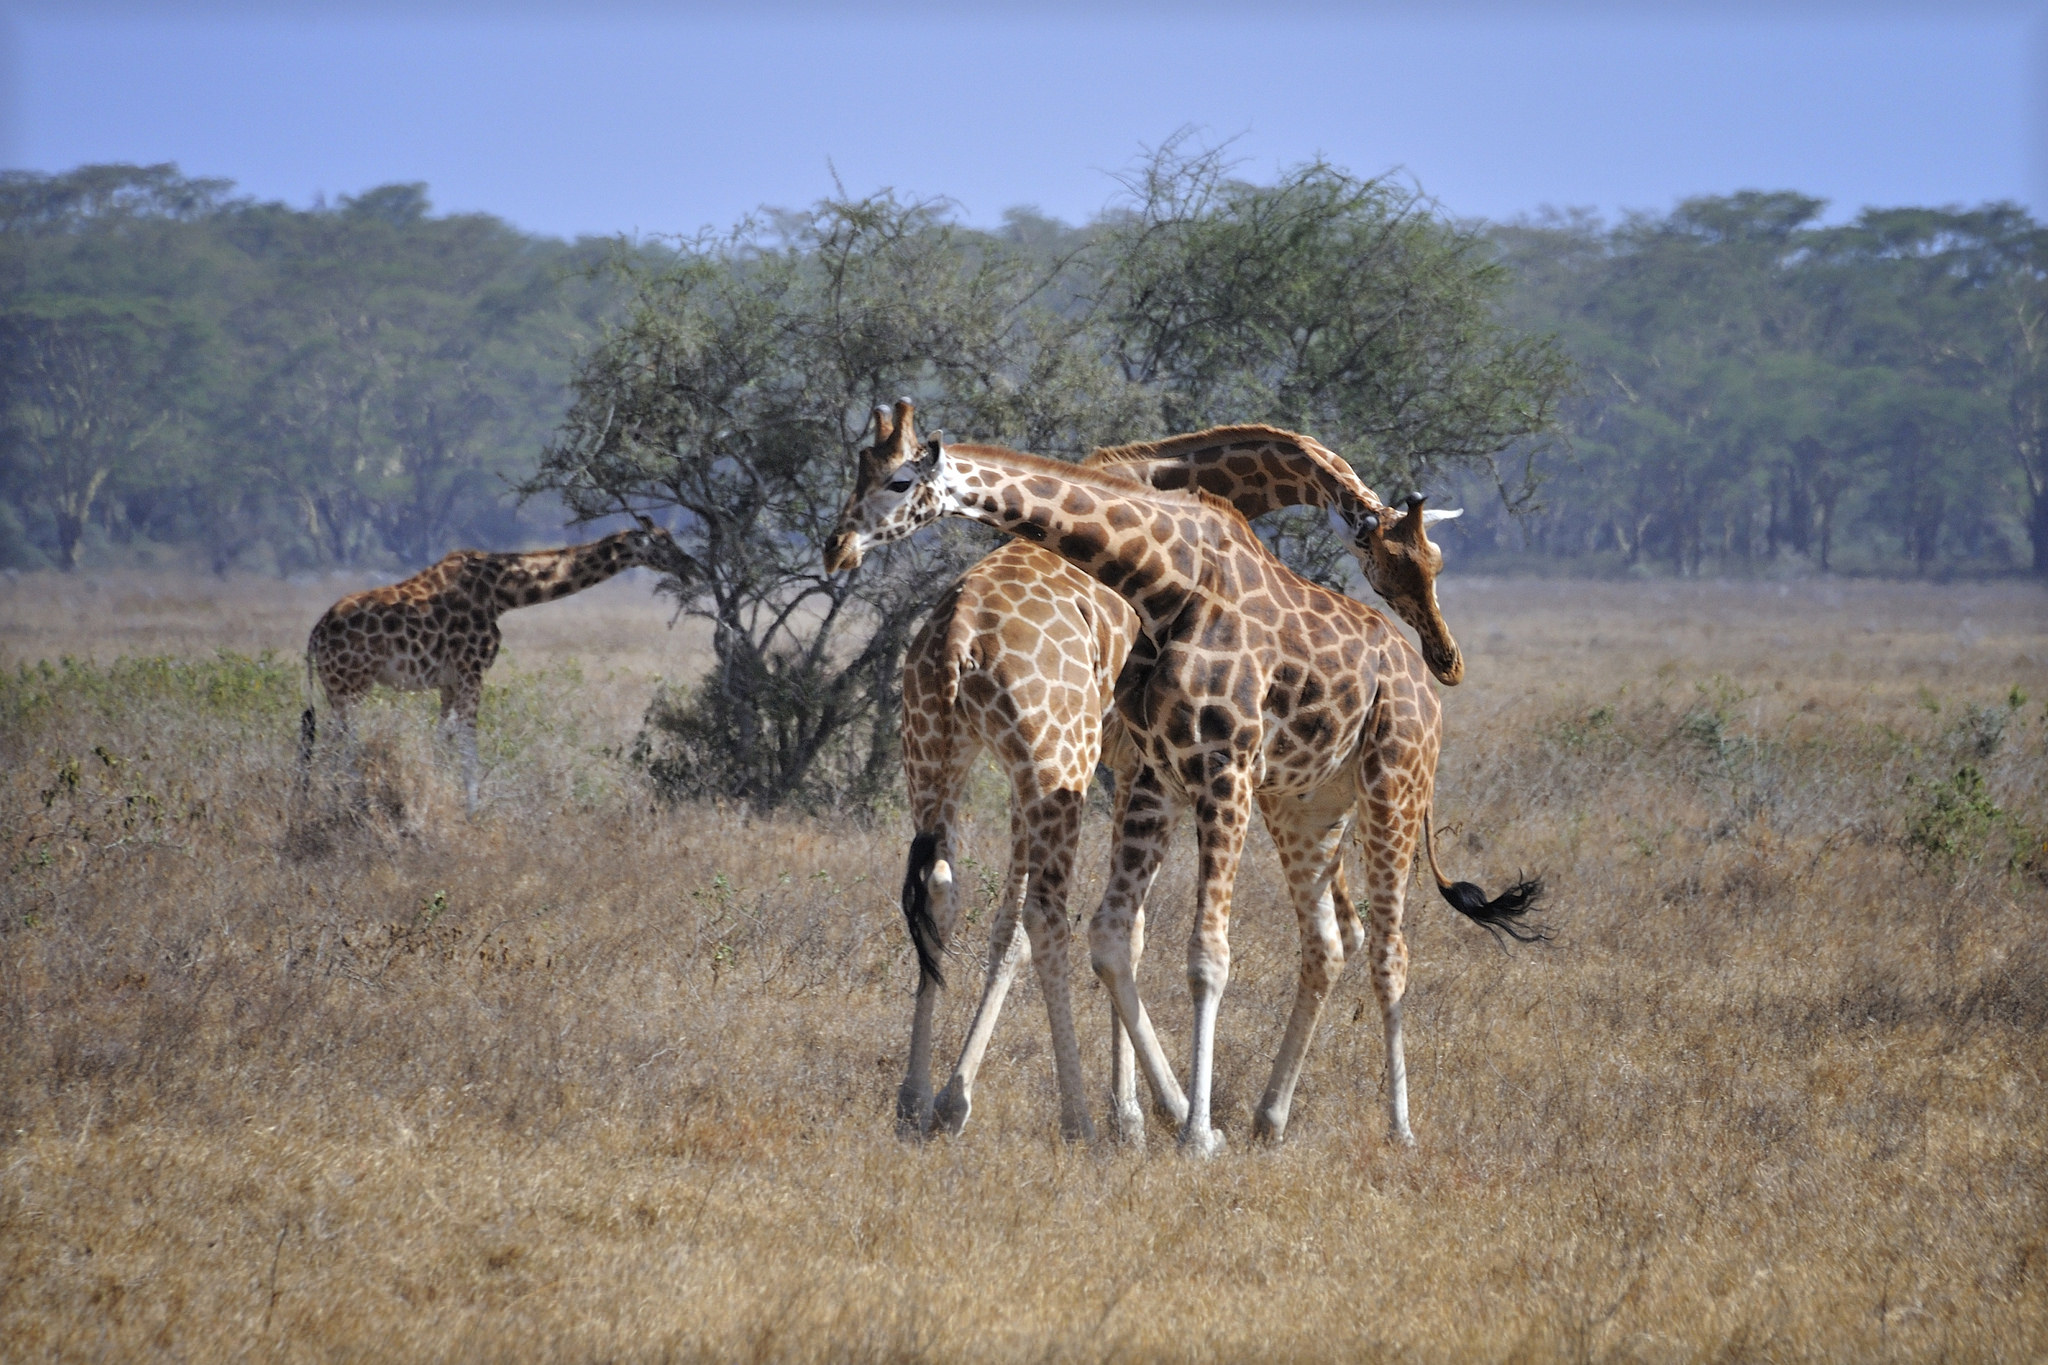 Wild life 4. Животные Восточной Африки. Кения. Giraffes, Masai Mara game Reserve, Kenya, Африка.